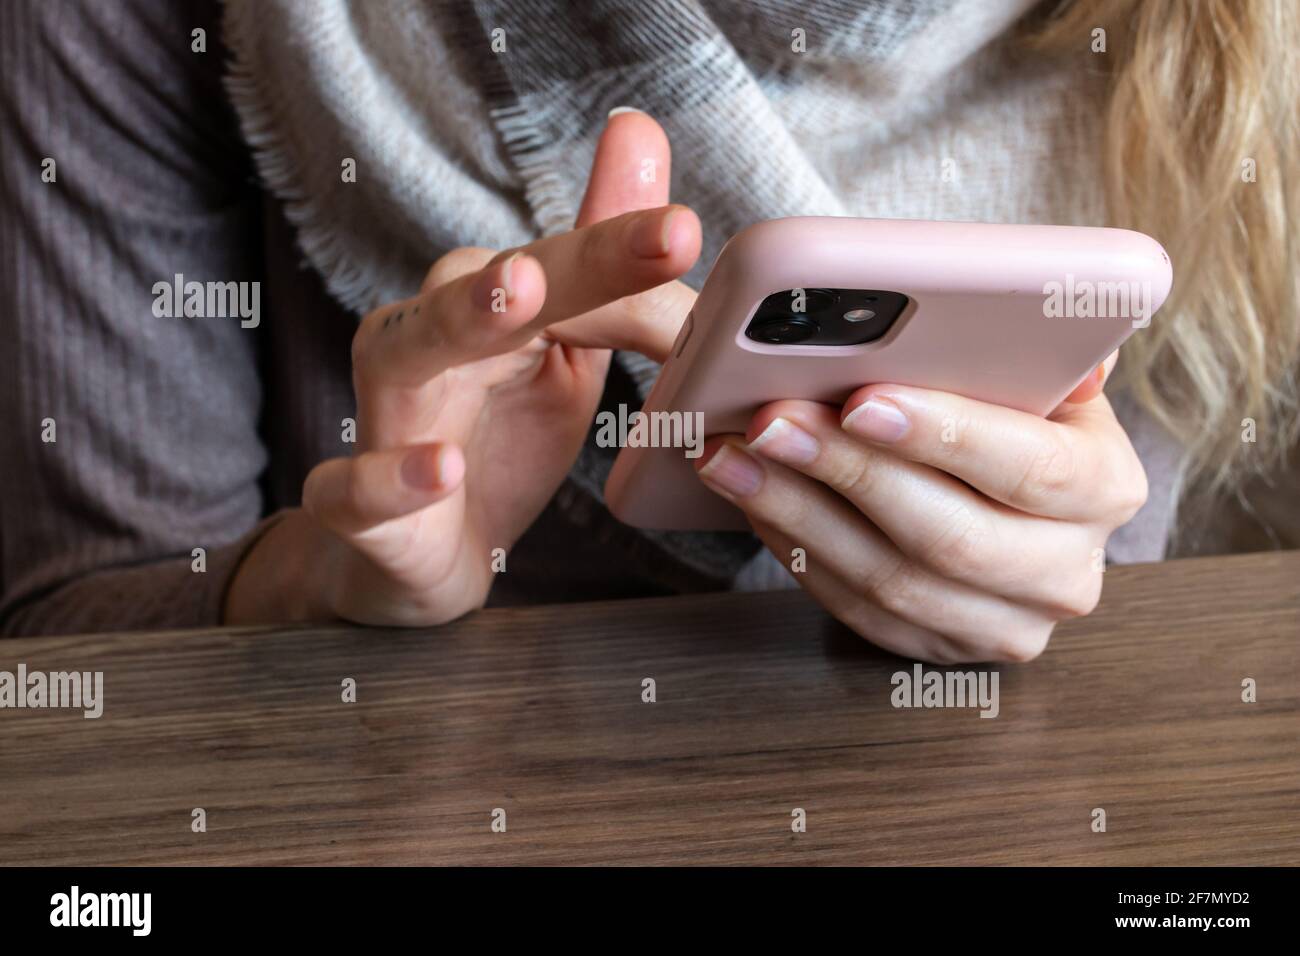 Donna con un tatuaggio delle dita e capelli biondi che scorrono rapidamente sul suo smartphone rosa in un bar, febbraio 2021. Foto Stock